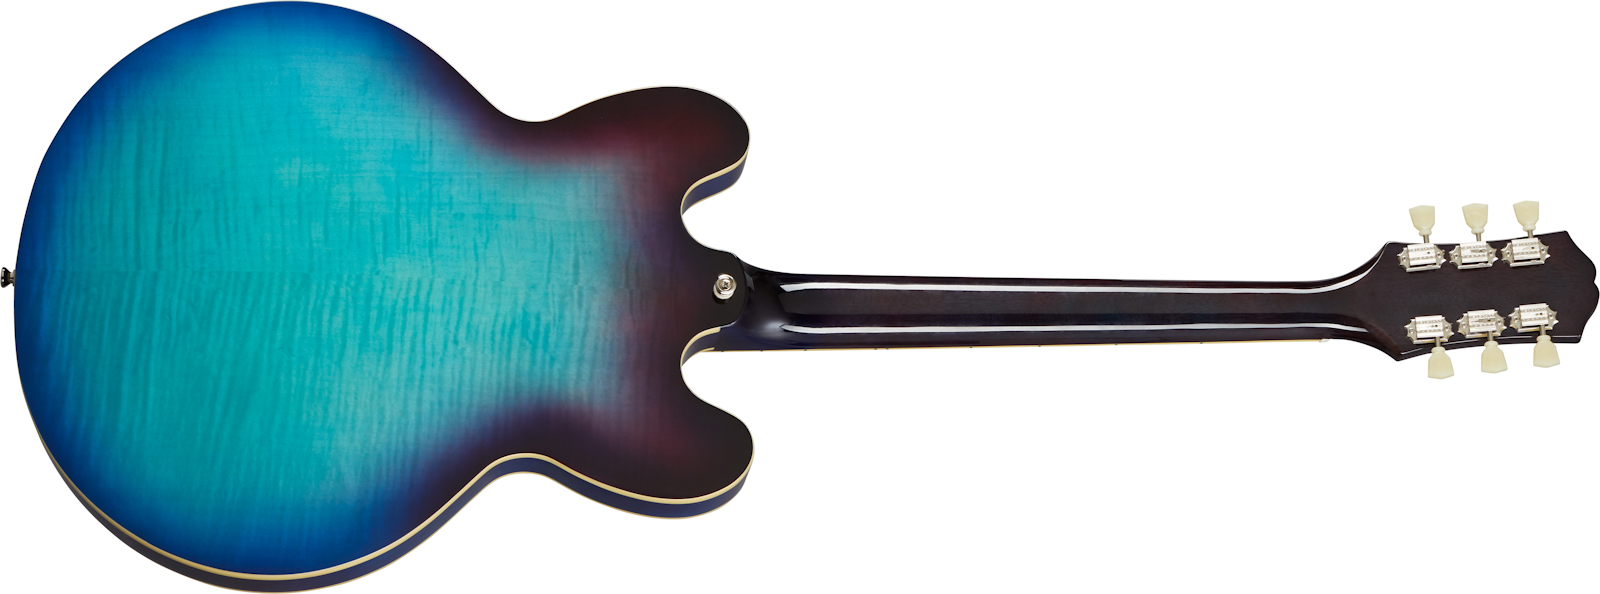 Epiphone Es-335 Figured Inspired By Gibson Original 2h Ht Rw - Blueberry Burst - Semi hollow elektriche gitaar - Variation 1